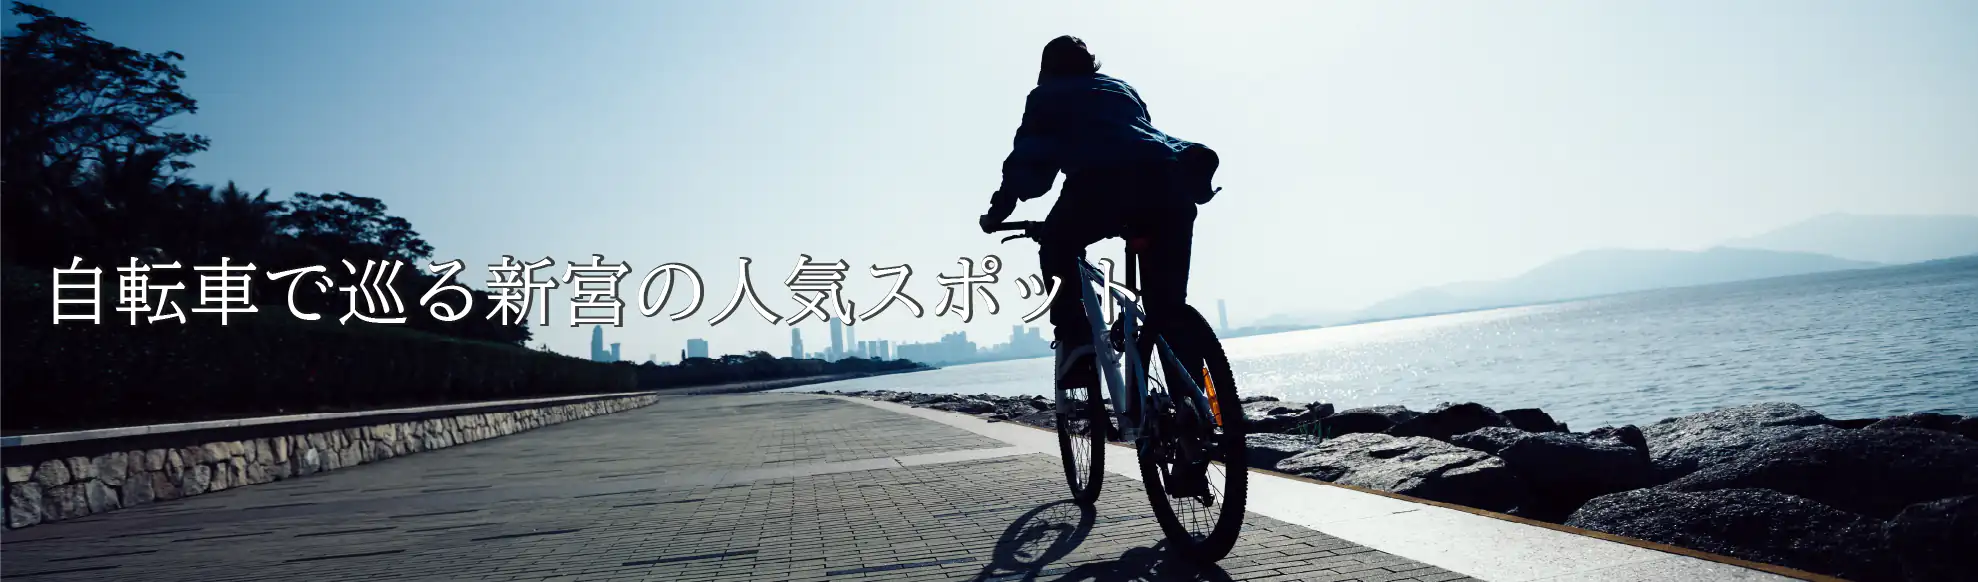 自転車で巡る新宮の人気スポット